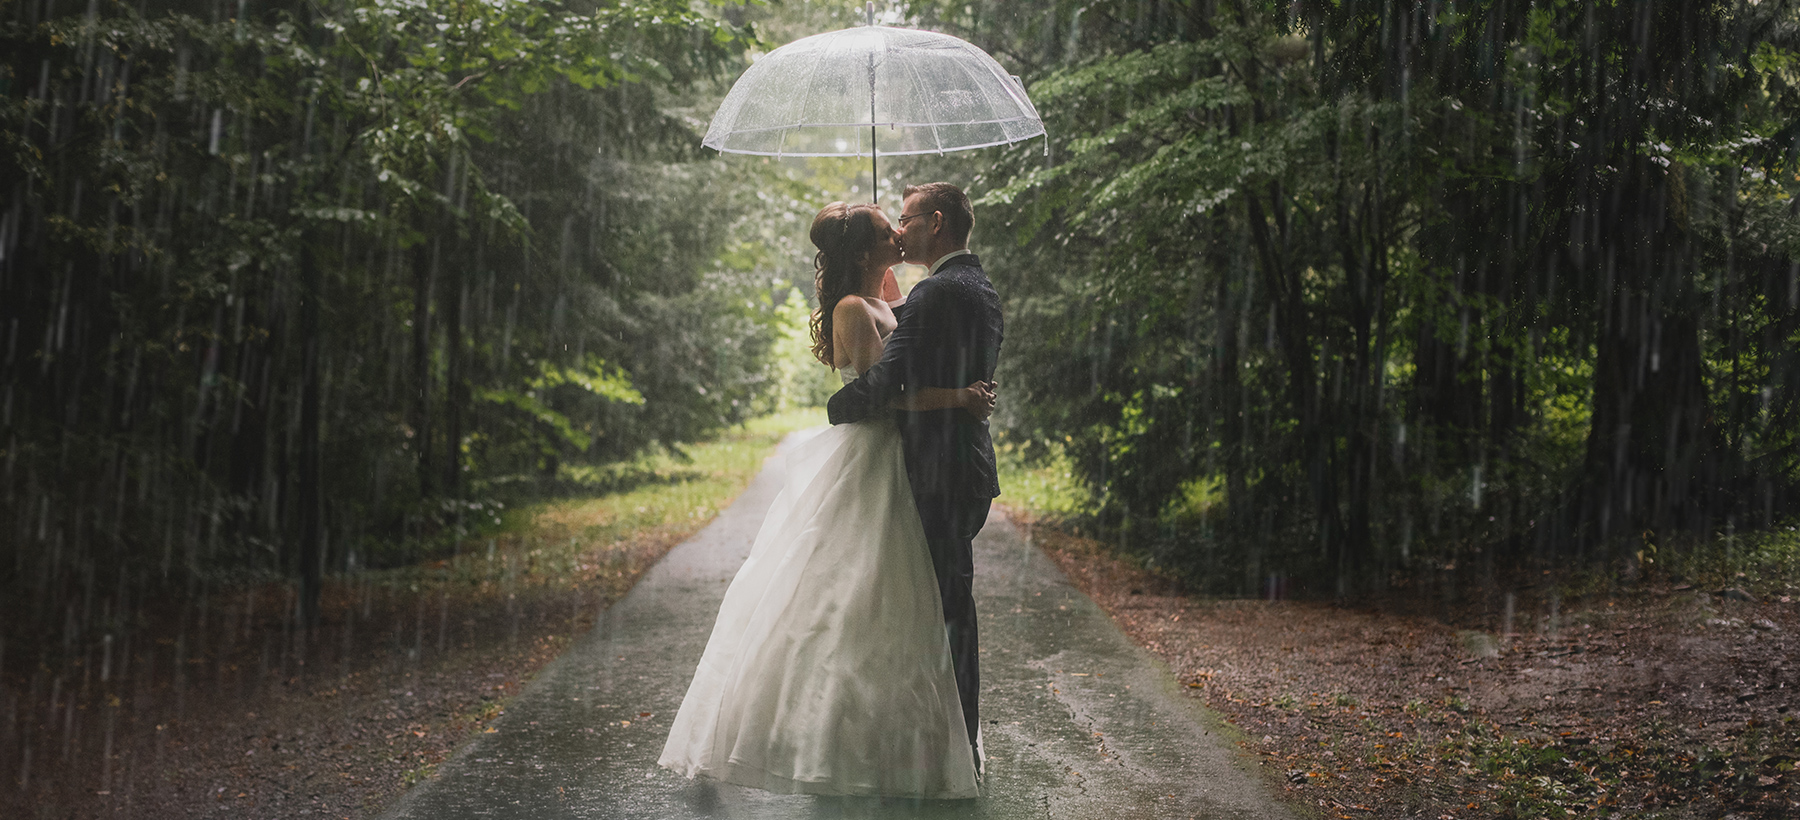 Utrinek s fotografiranja poroke v dežju.